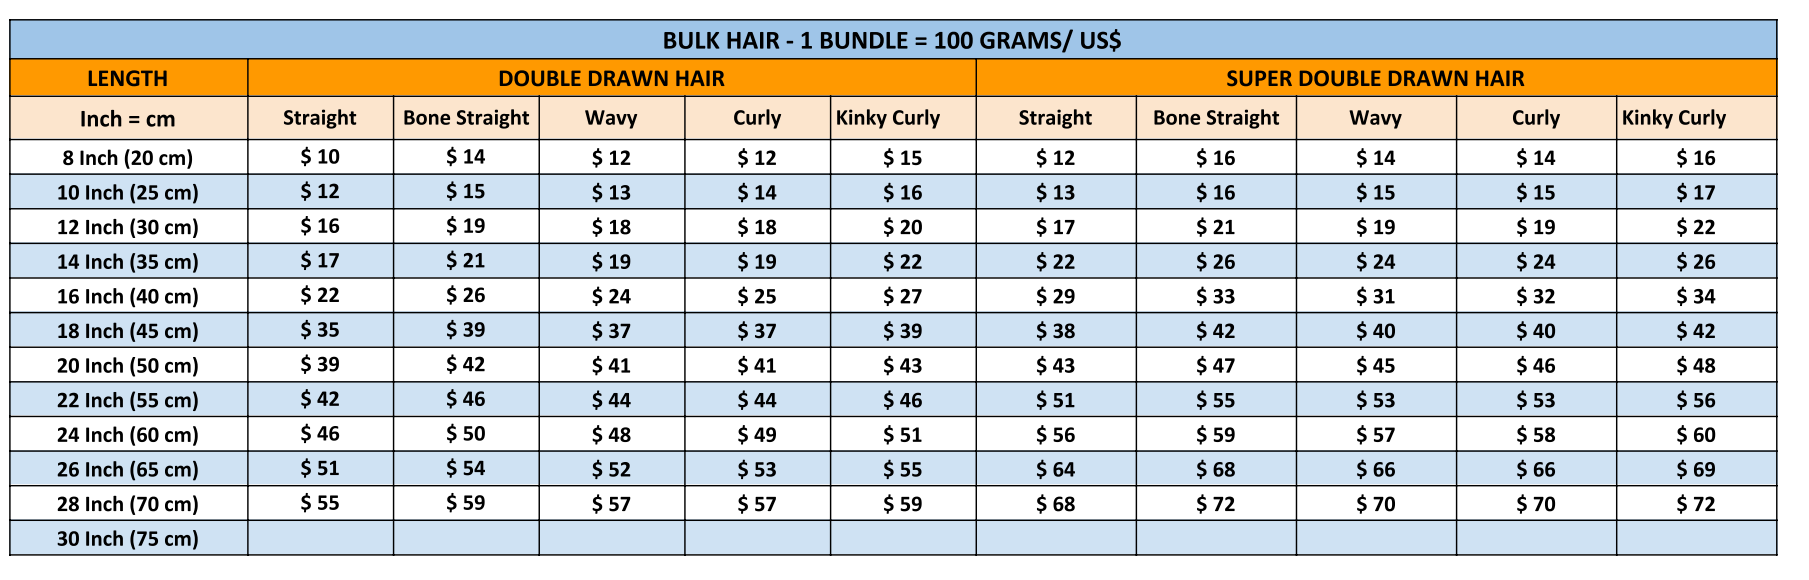 Bulk Hair Sunny Hair Vietnam Price